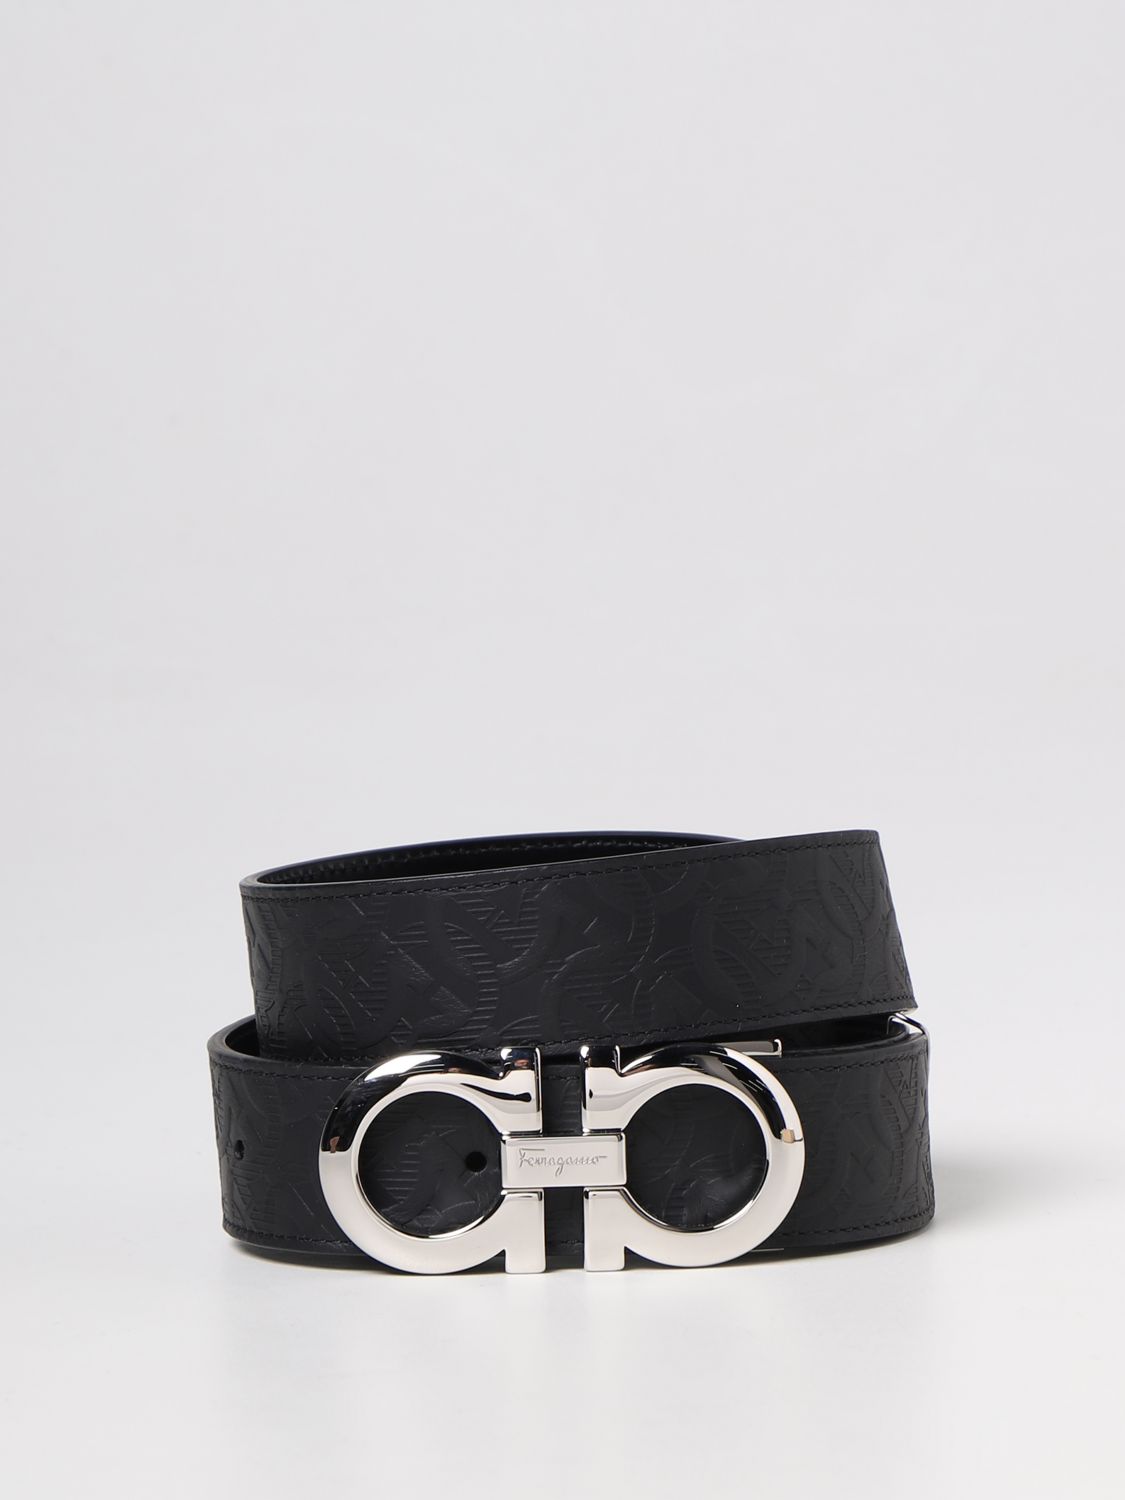 FERRAGAMO: belt for man - Black | Ferragamo belt 675542724127 online on ...